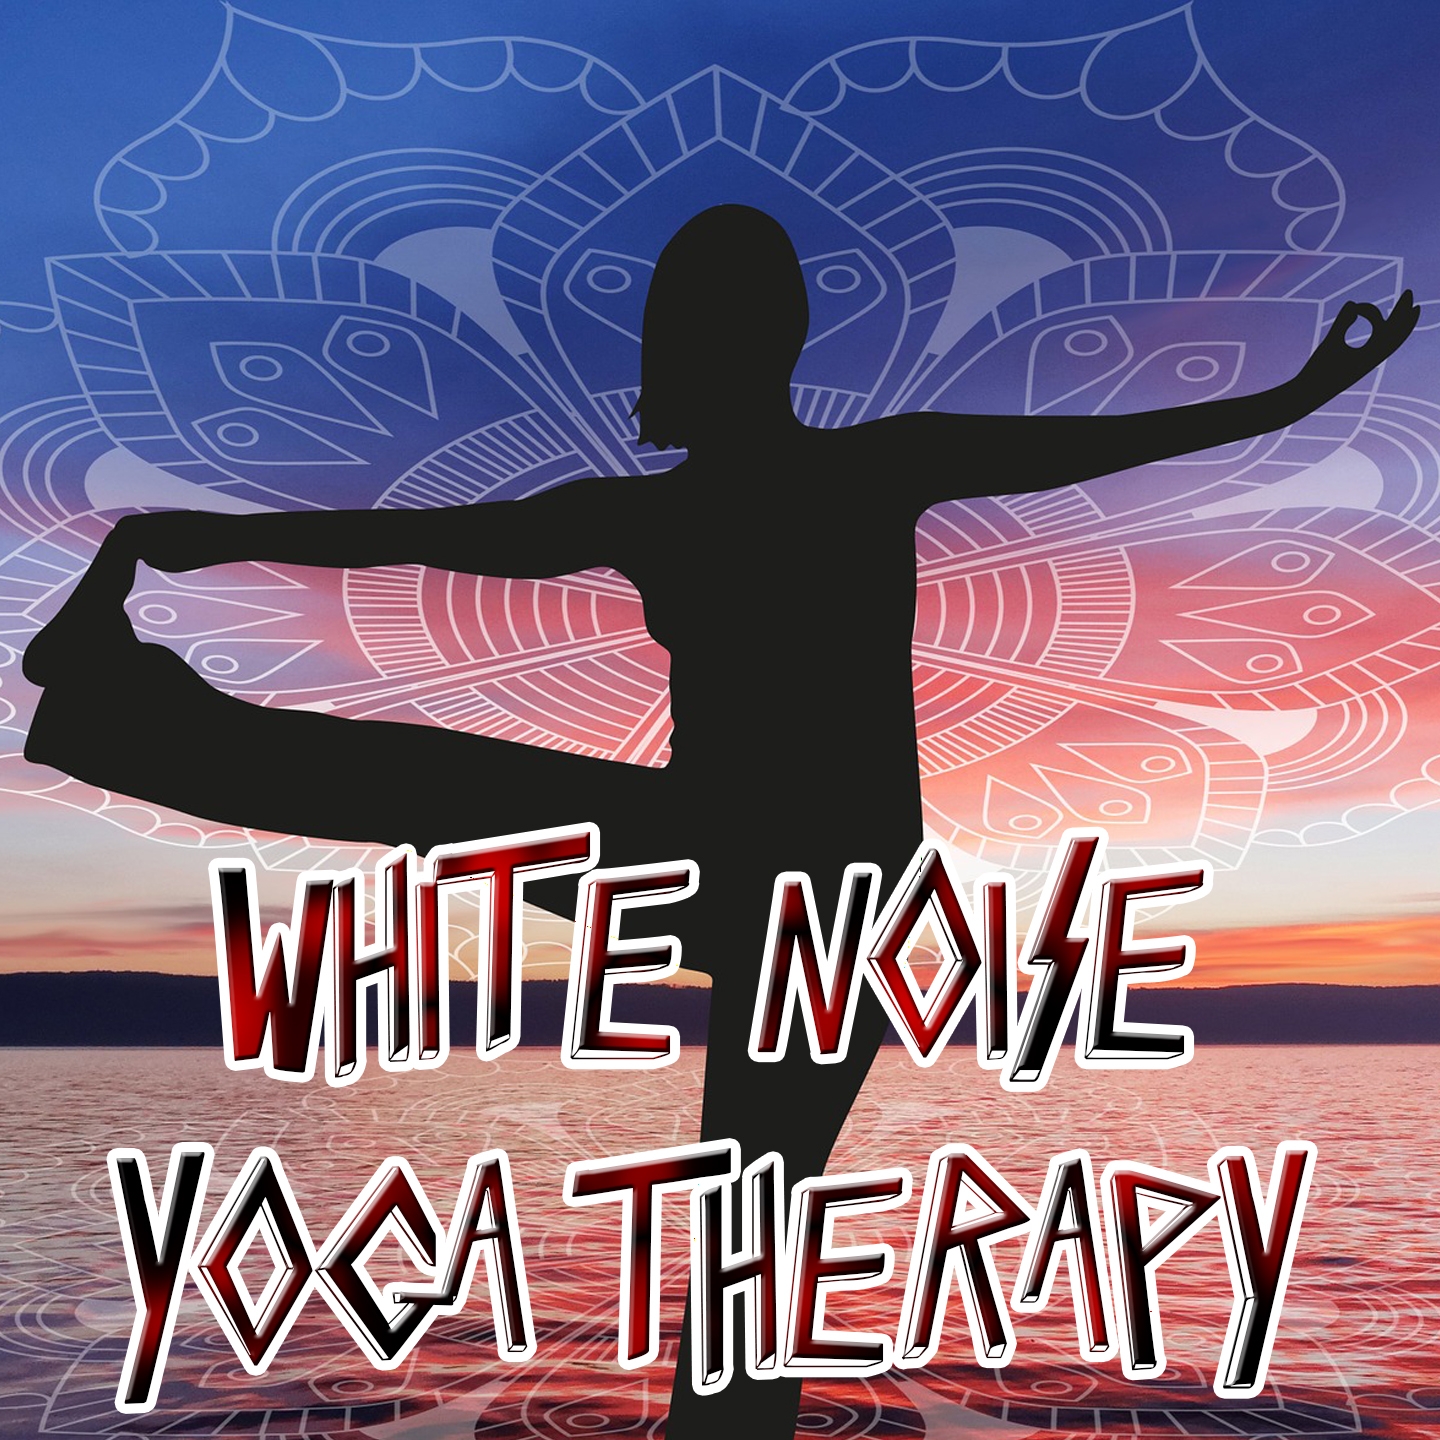 White Noise Yoga Therapy